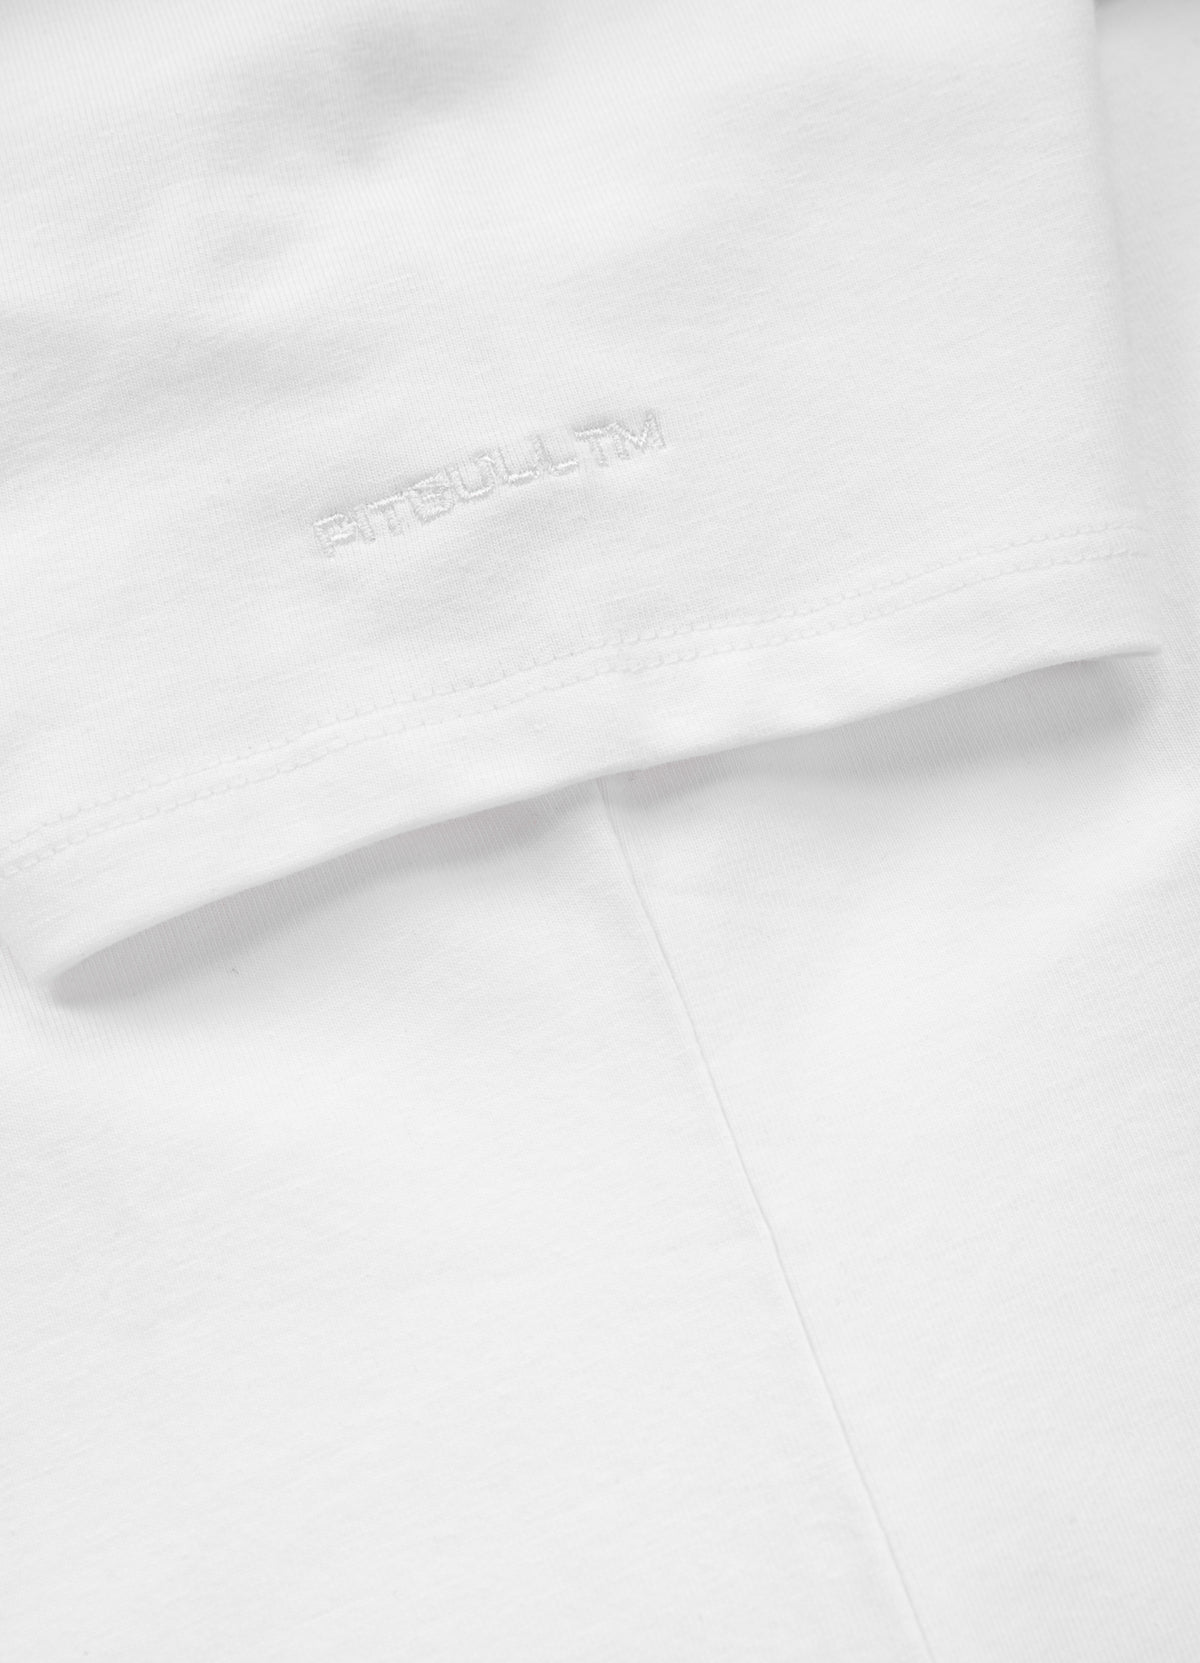 PRETTY OVERSIZE White T-shirt - Pitbullstore.eu